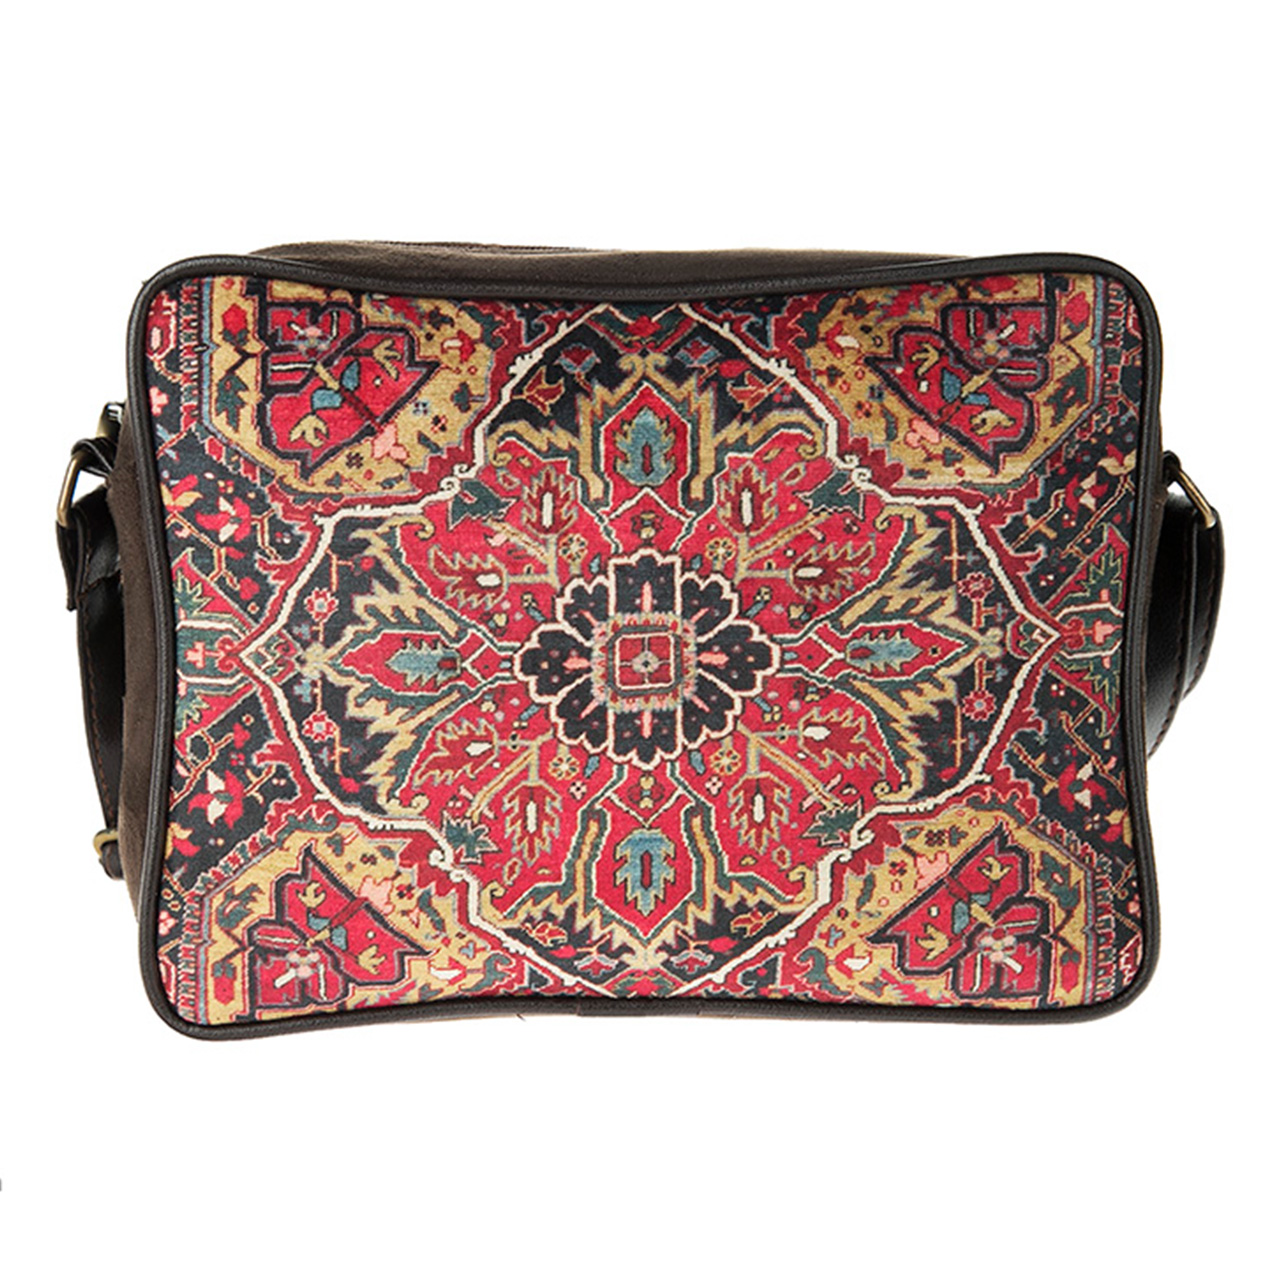 کیف زنانه رو دوشی کد 05 مشخصات، قیمت و خرید | فروشگاه تن پوش پارسی